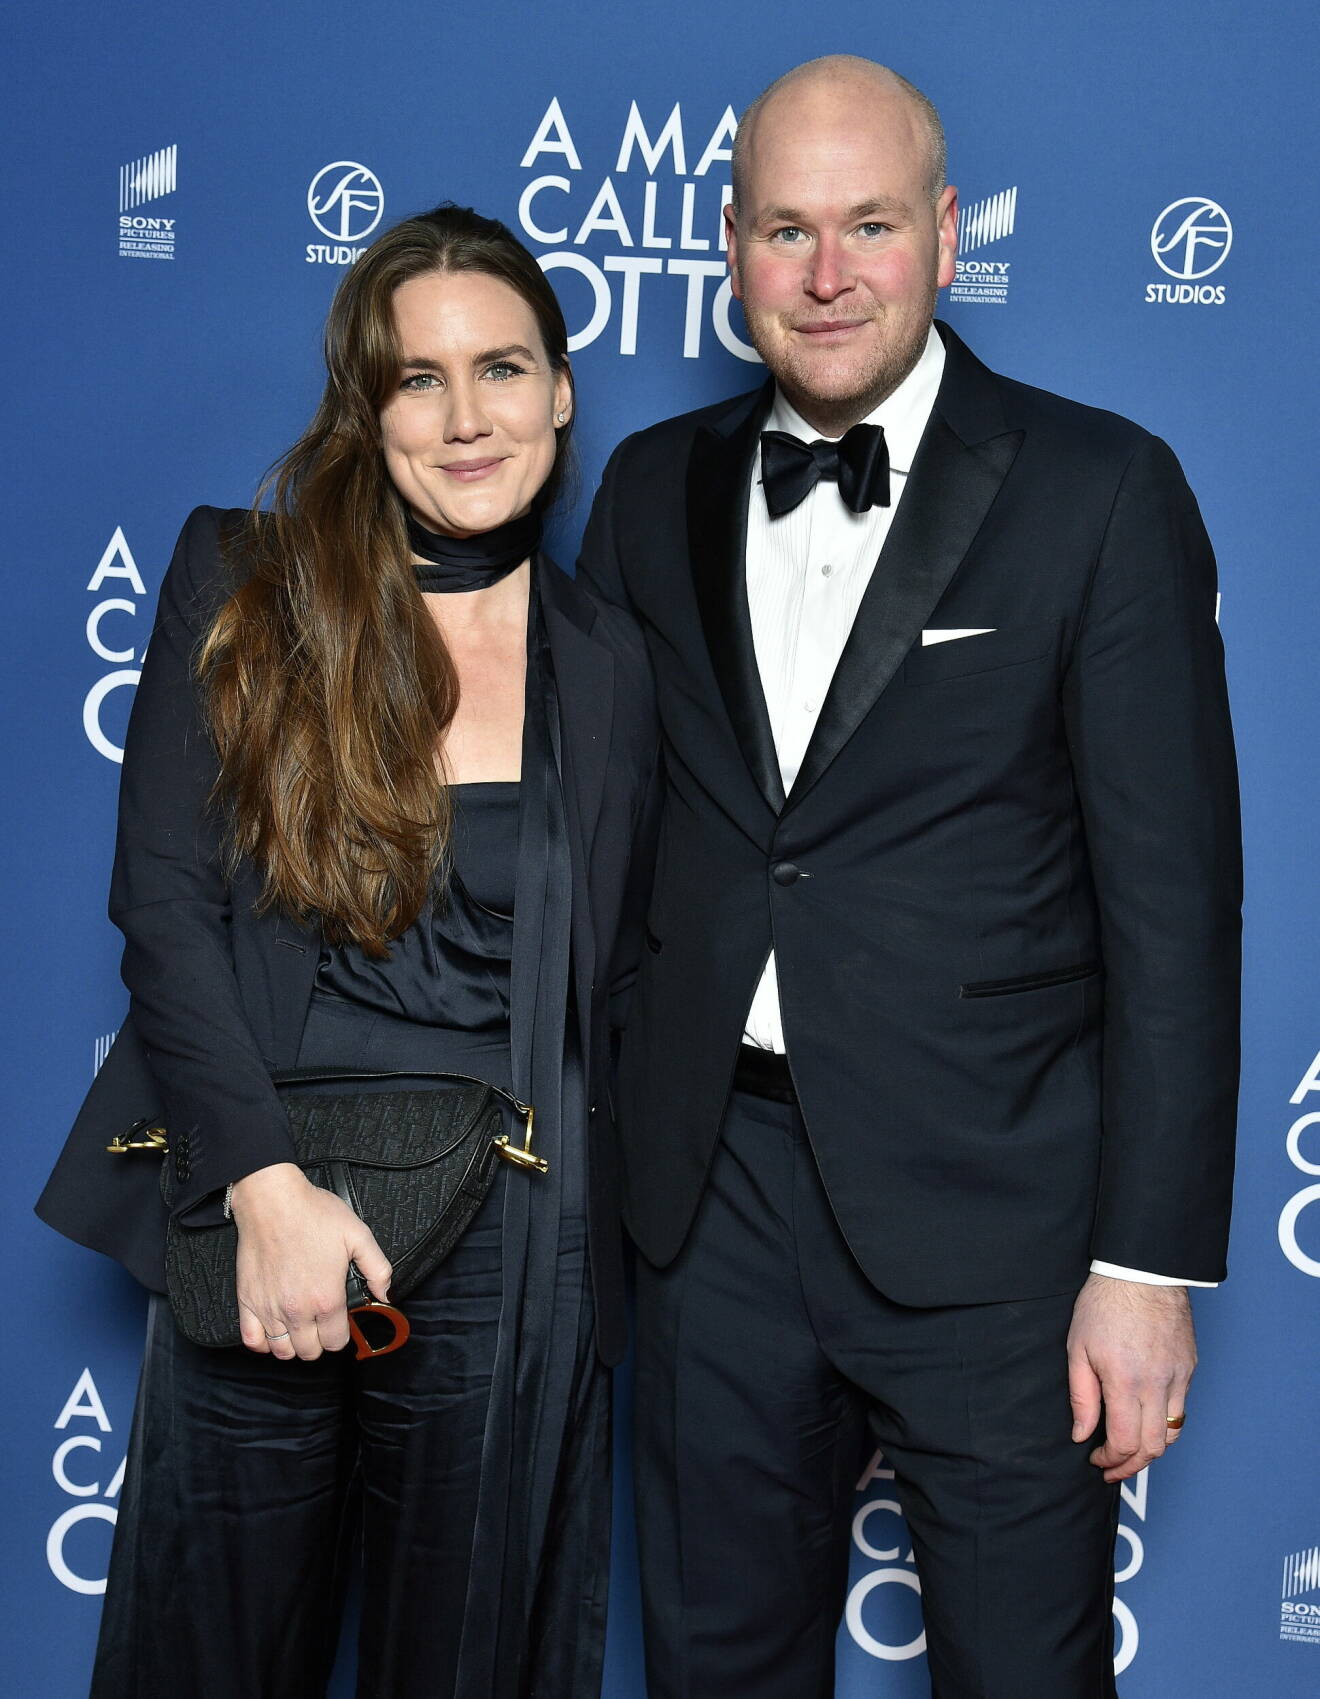 Johan jureskog och hustrun Paulina på röda mattan inför biopremiären av filmen A Man Called Otto i slutet på fjolåret.